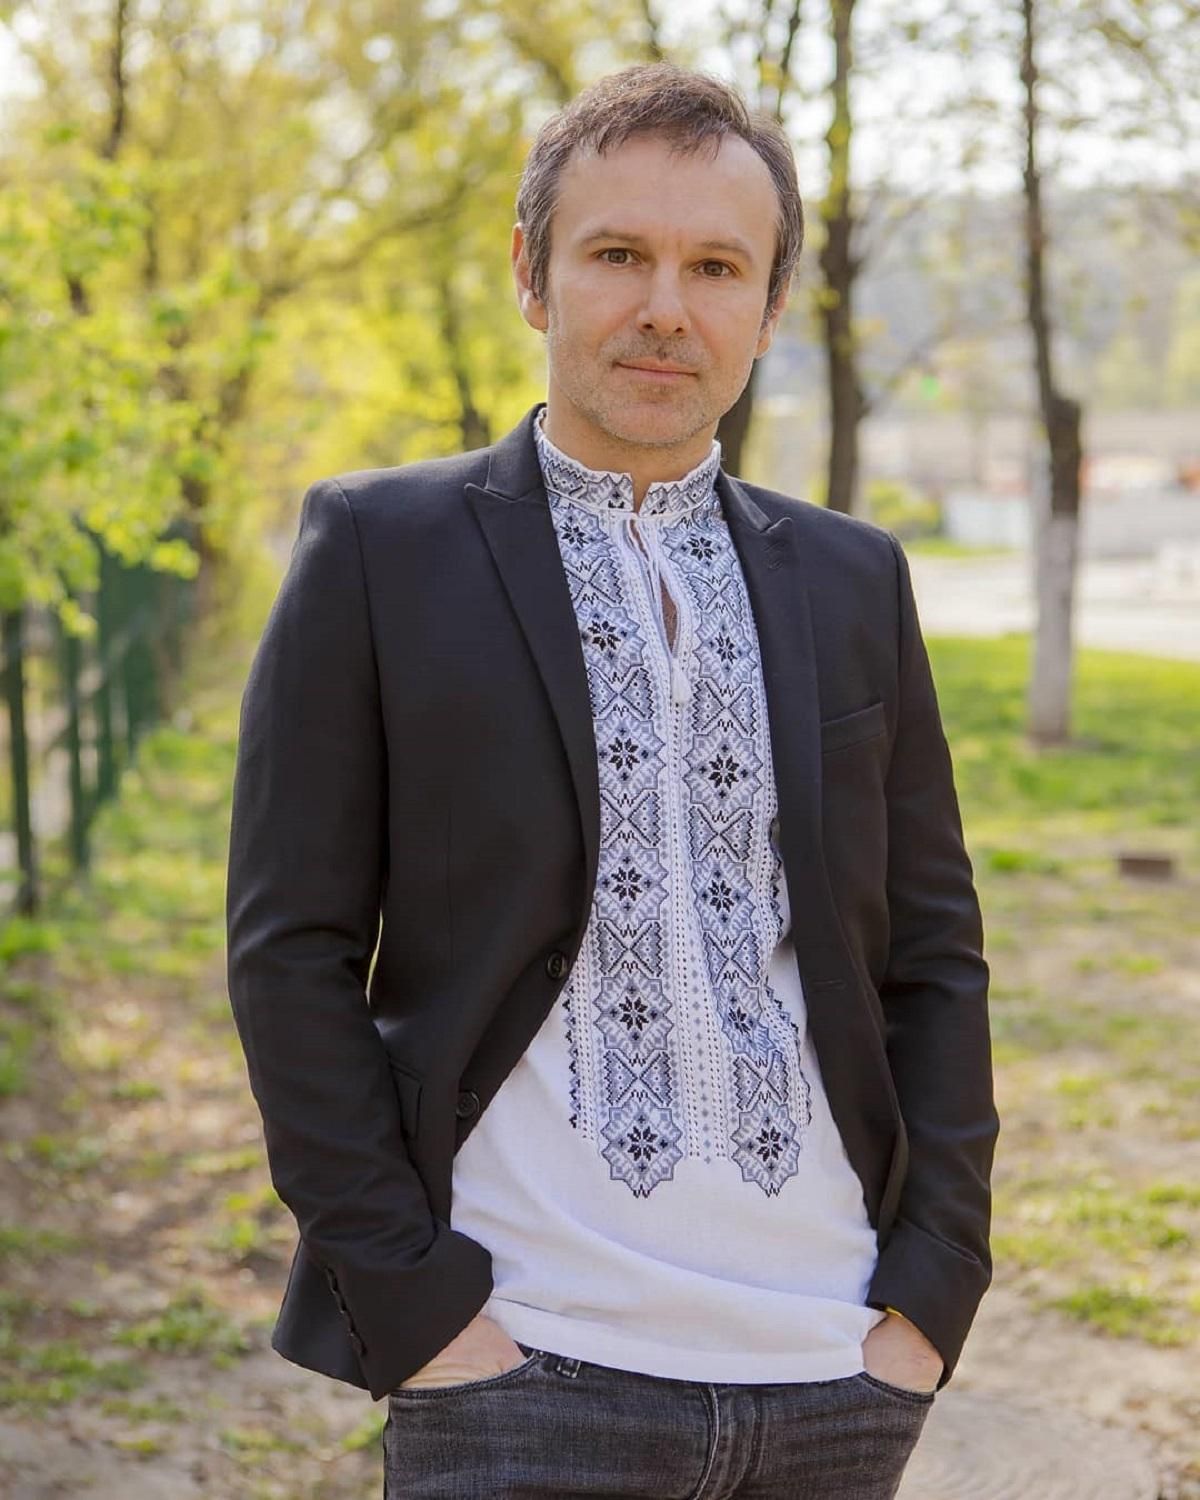 Концерт будет: Святослав Вакарчук организовал выступление группы в Киеве за сутки